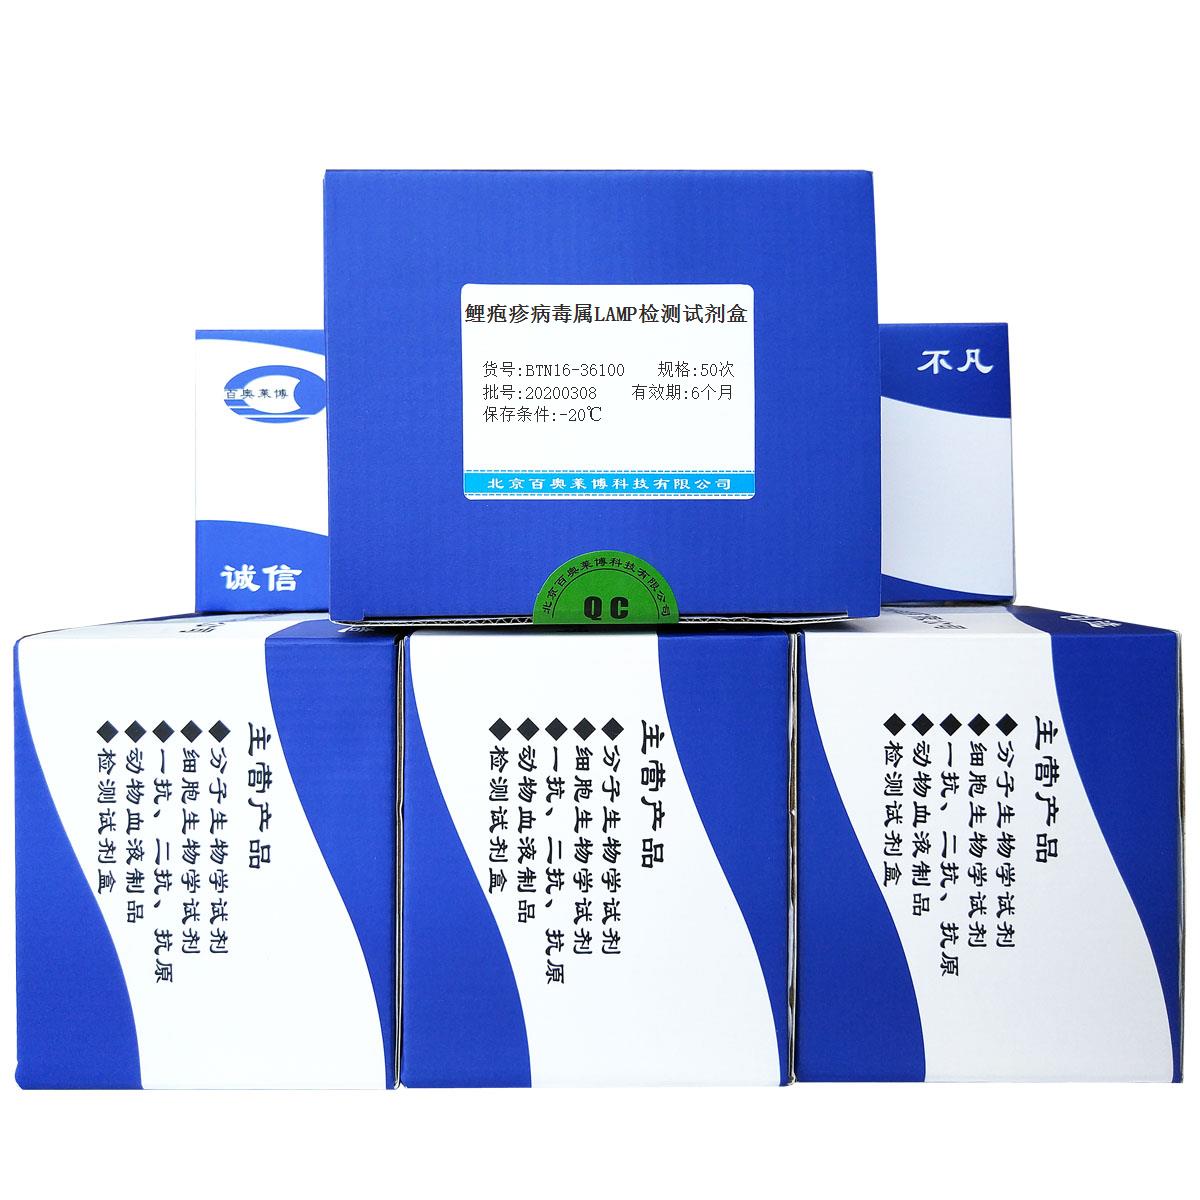 鲤疱疹病毒属LAMP检测试剂盒北京供应商